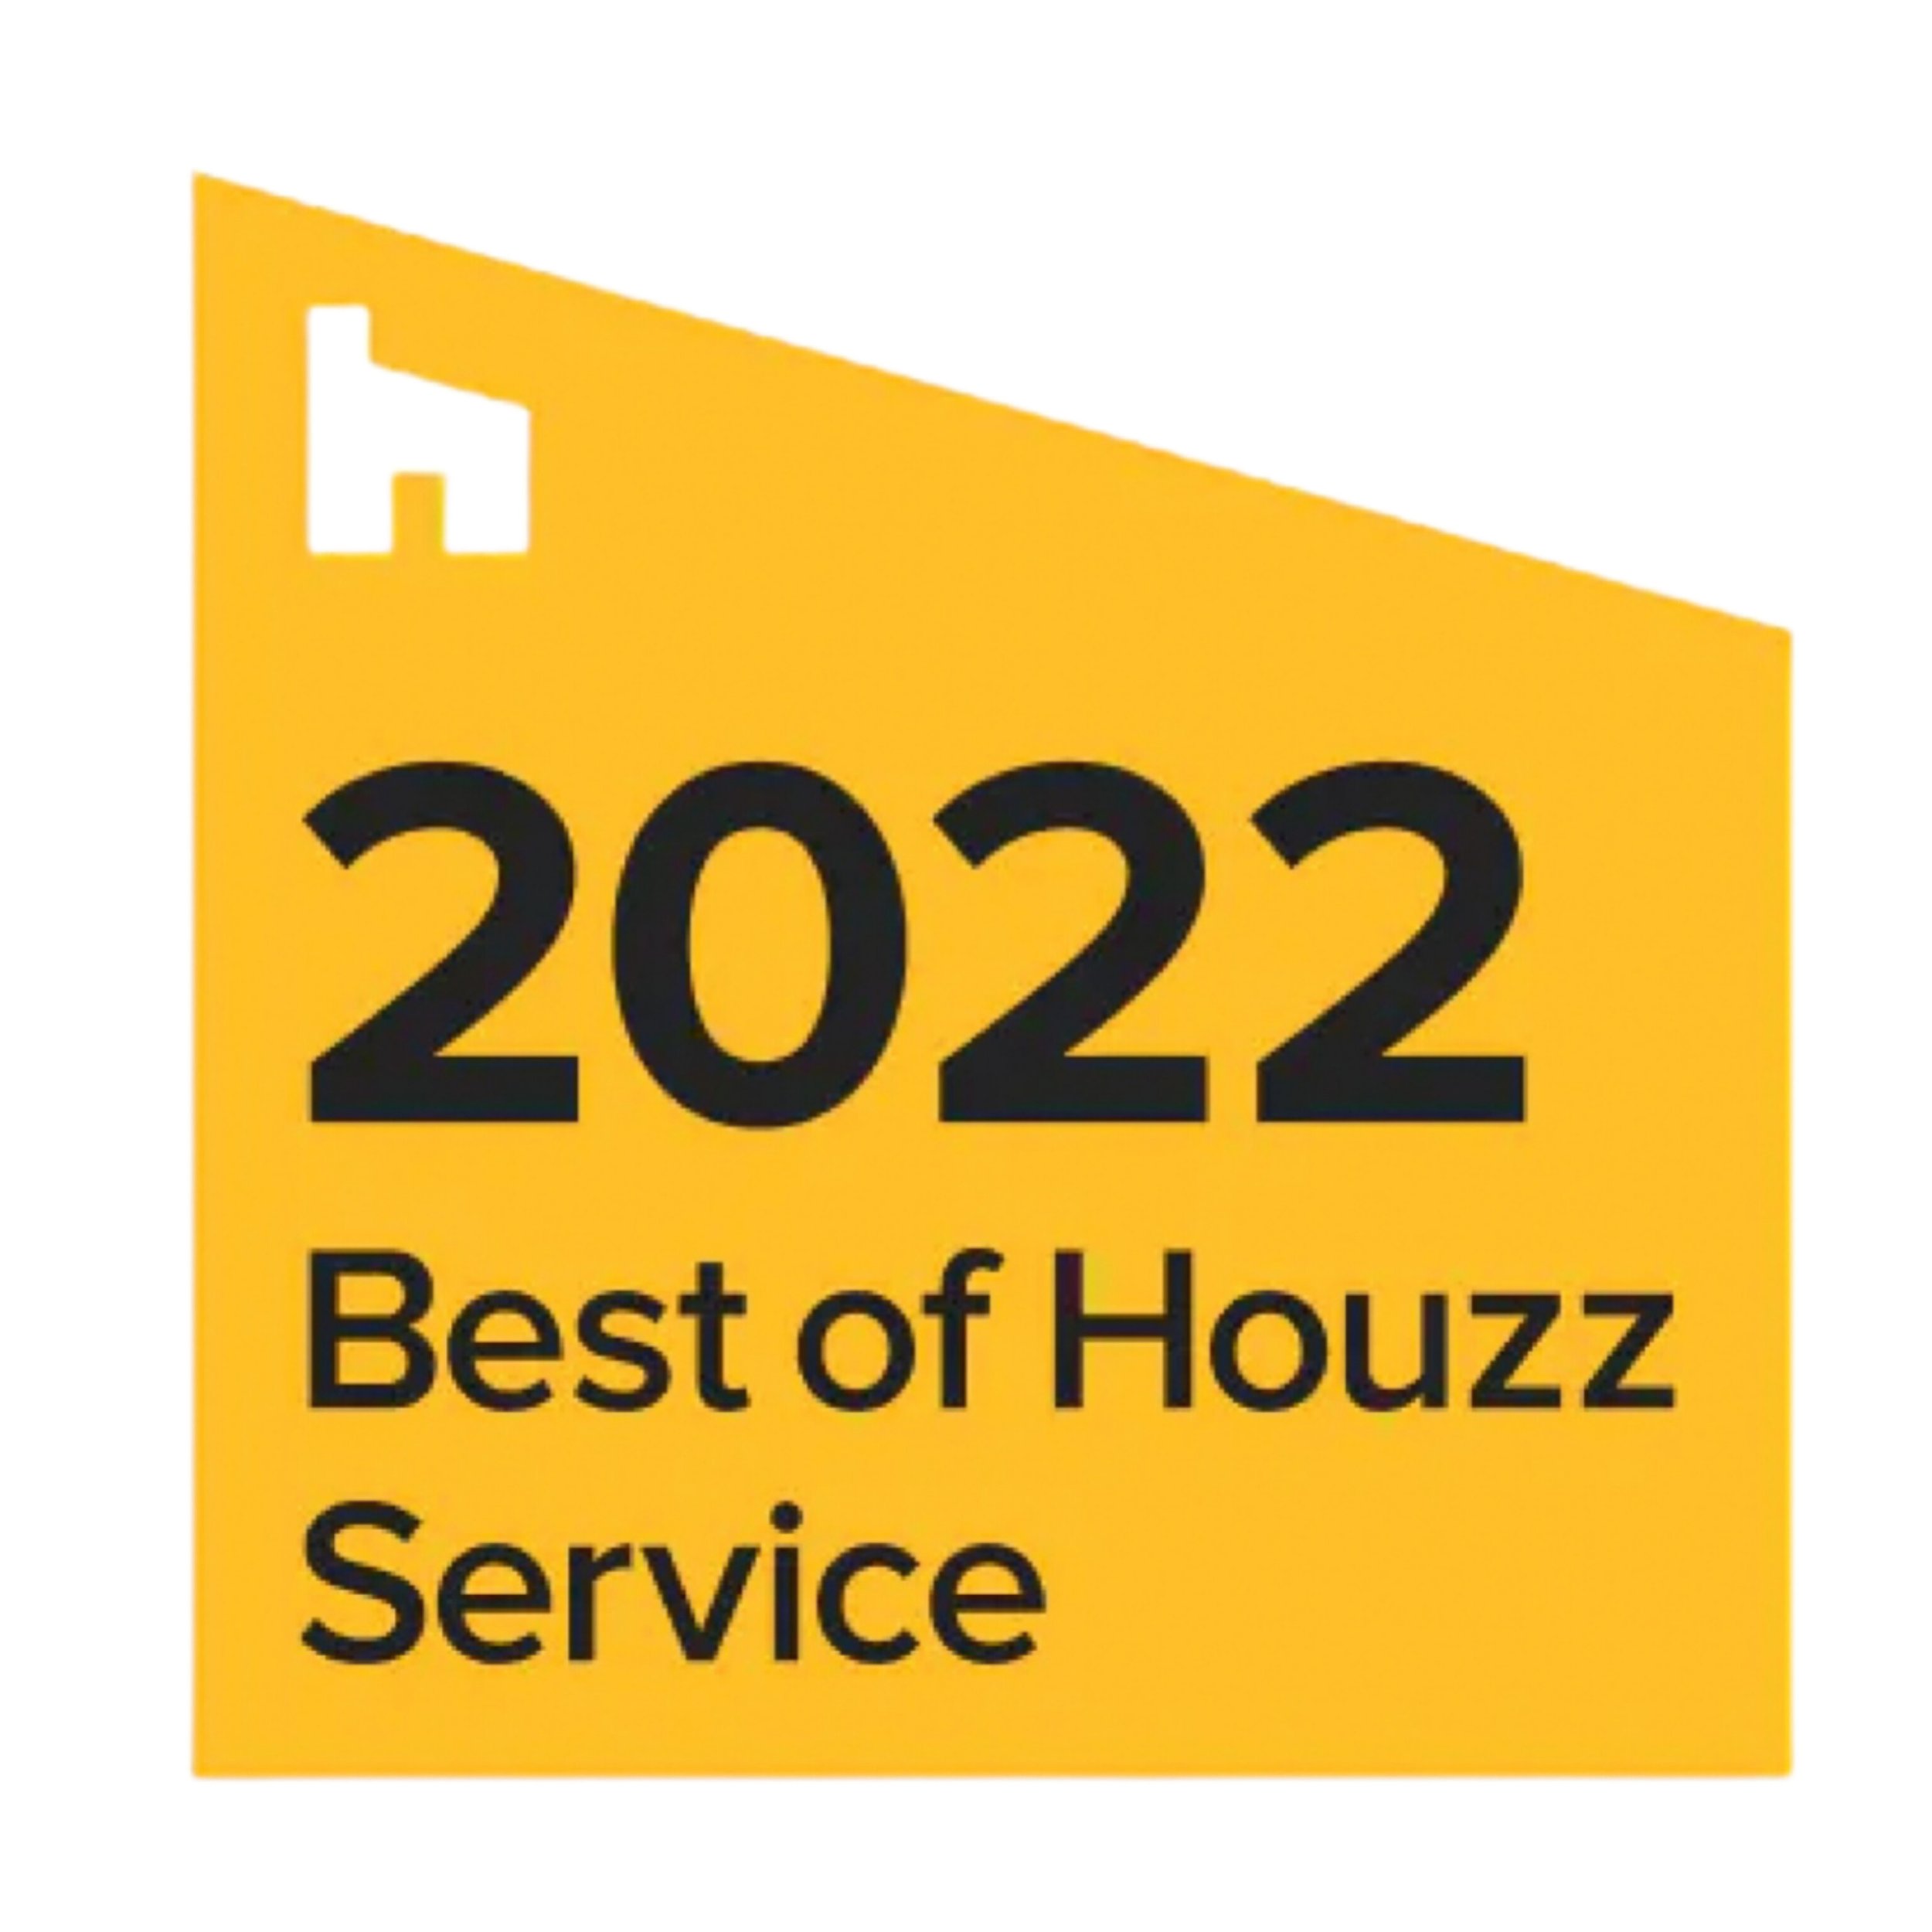 best-of-houzz-service-2022-magnus-flooring.jpg